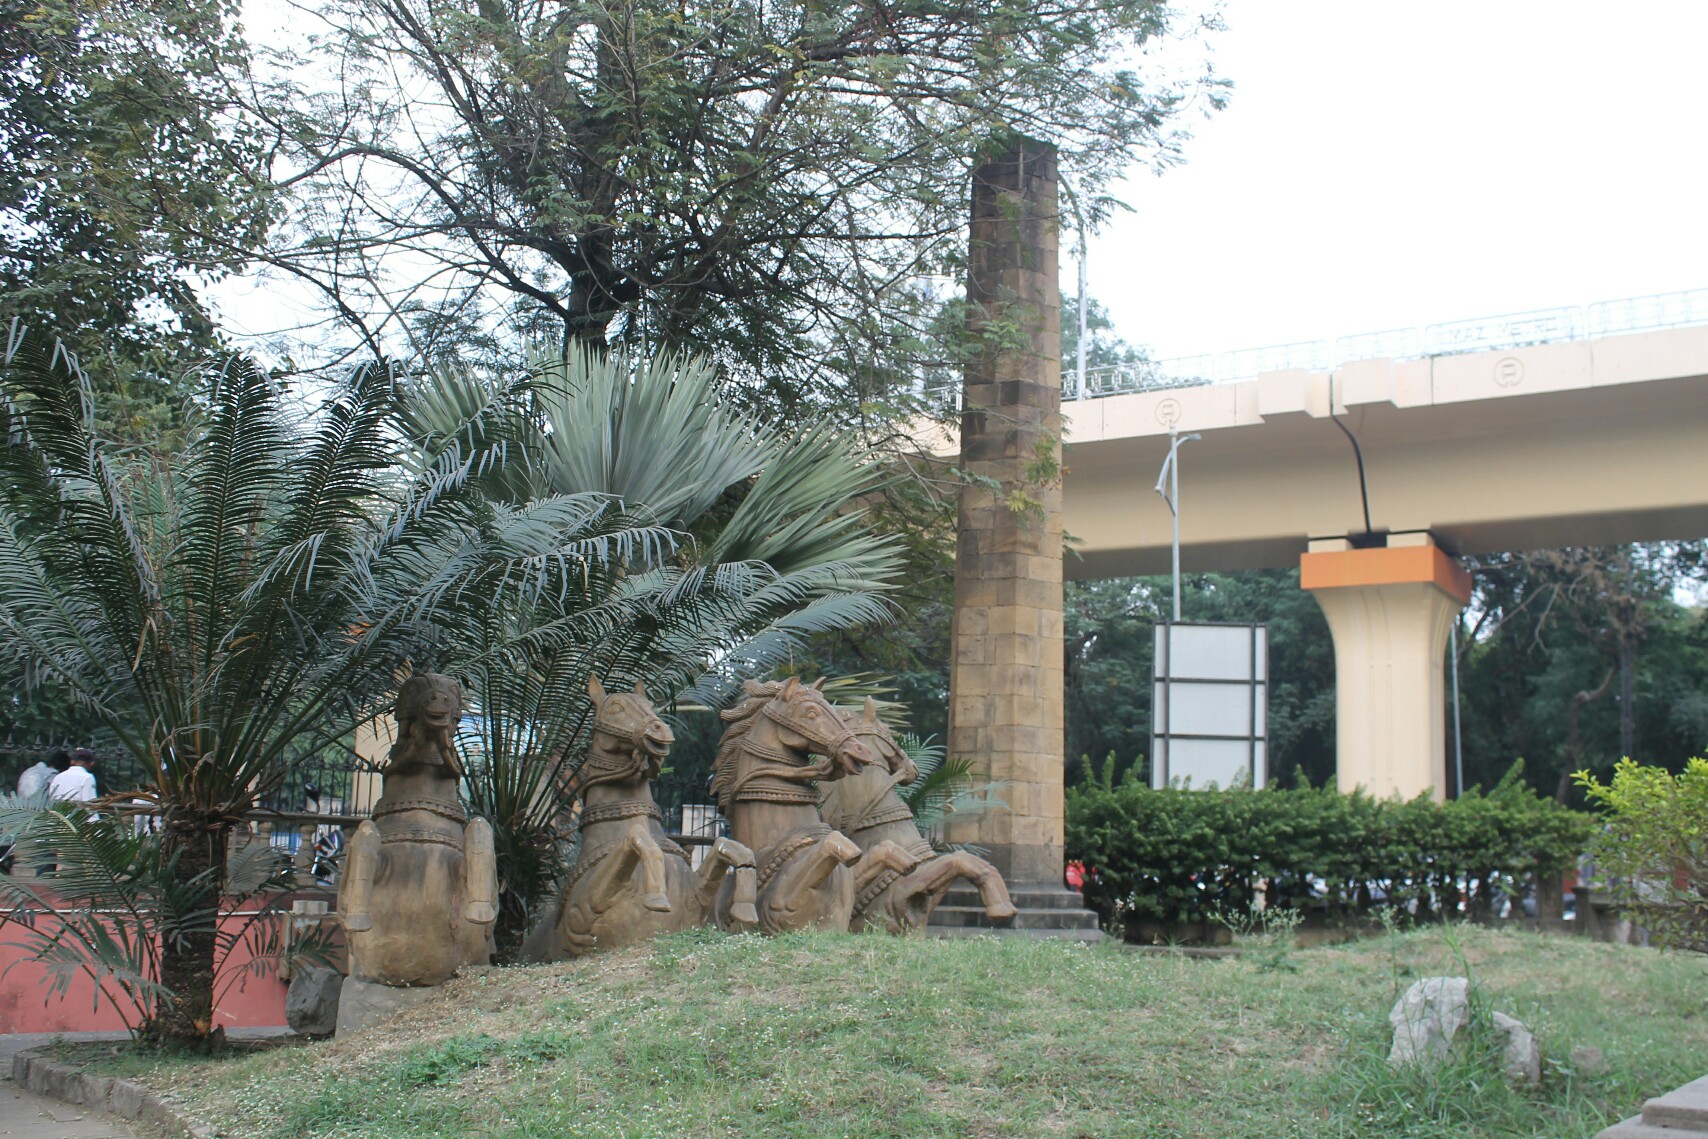 Nagpur Zero Mile Stone